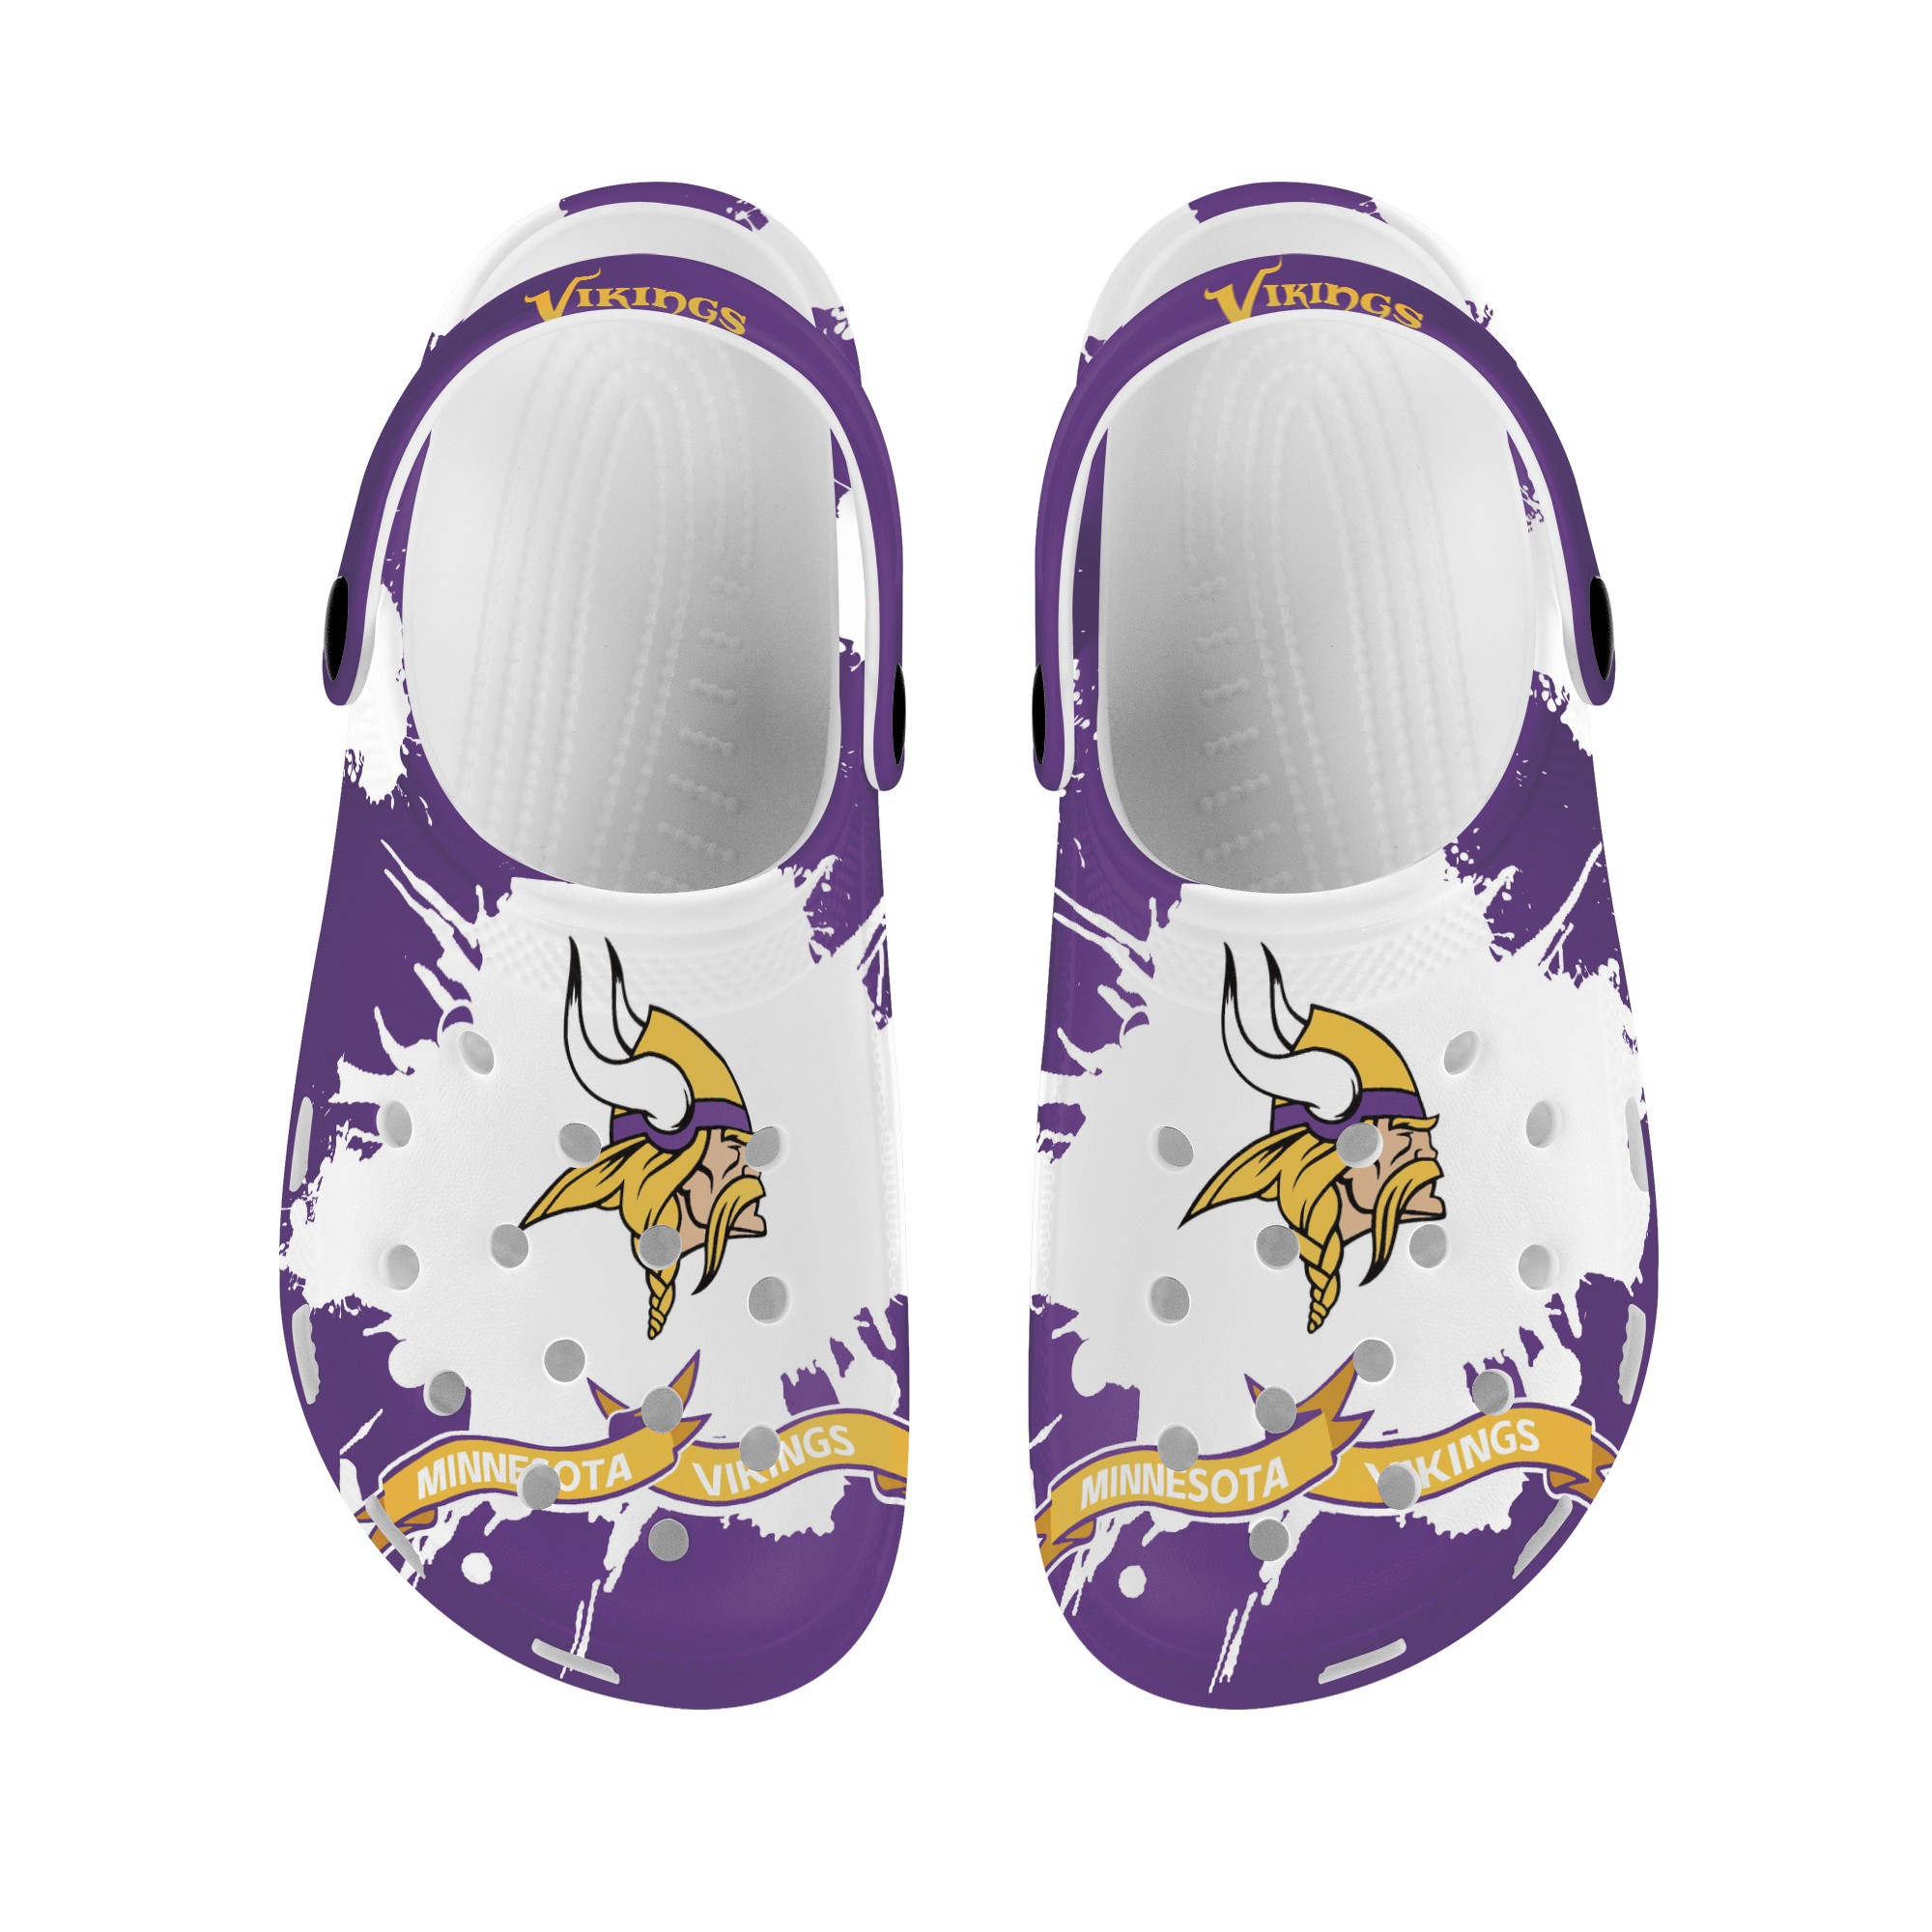 Minnesota Vikings Crocs shoes cute Style#1 Shoes for fans -Jack sport shop